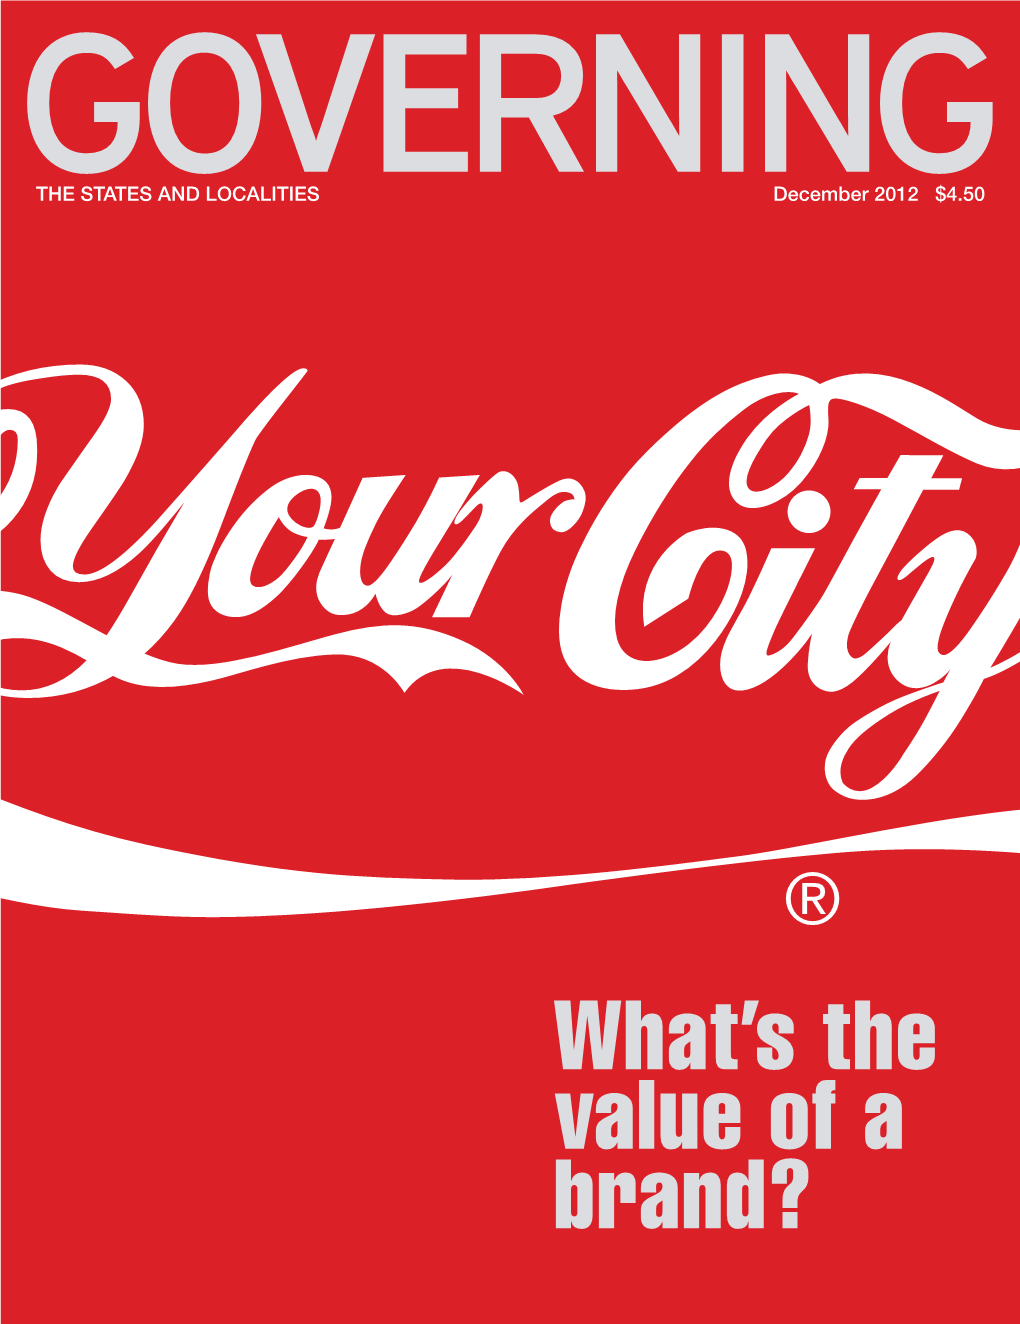 GOVERNING Magazine December 2012